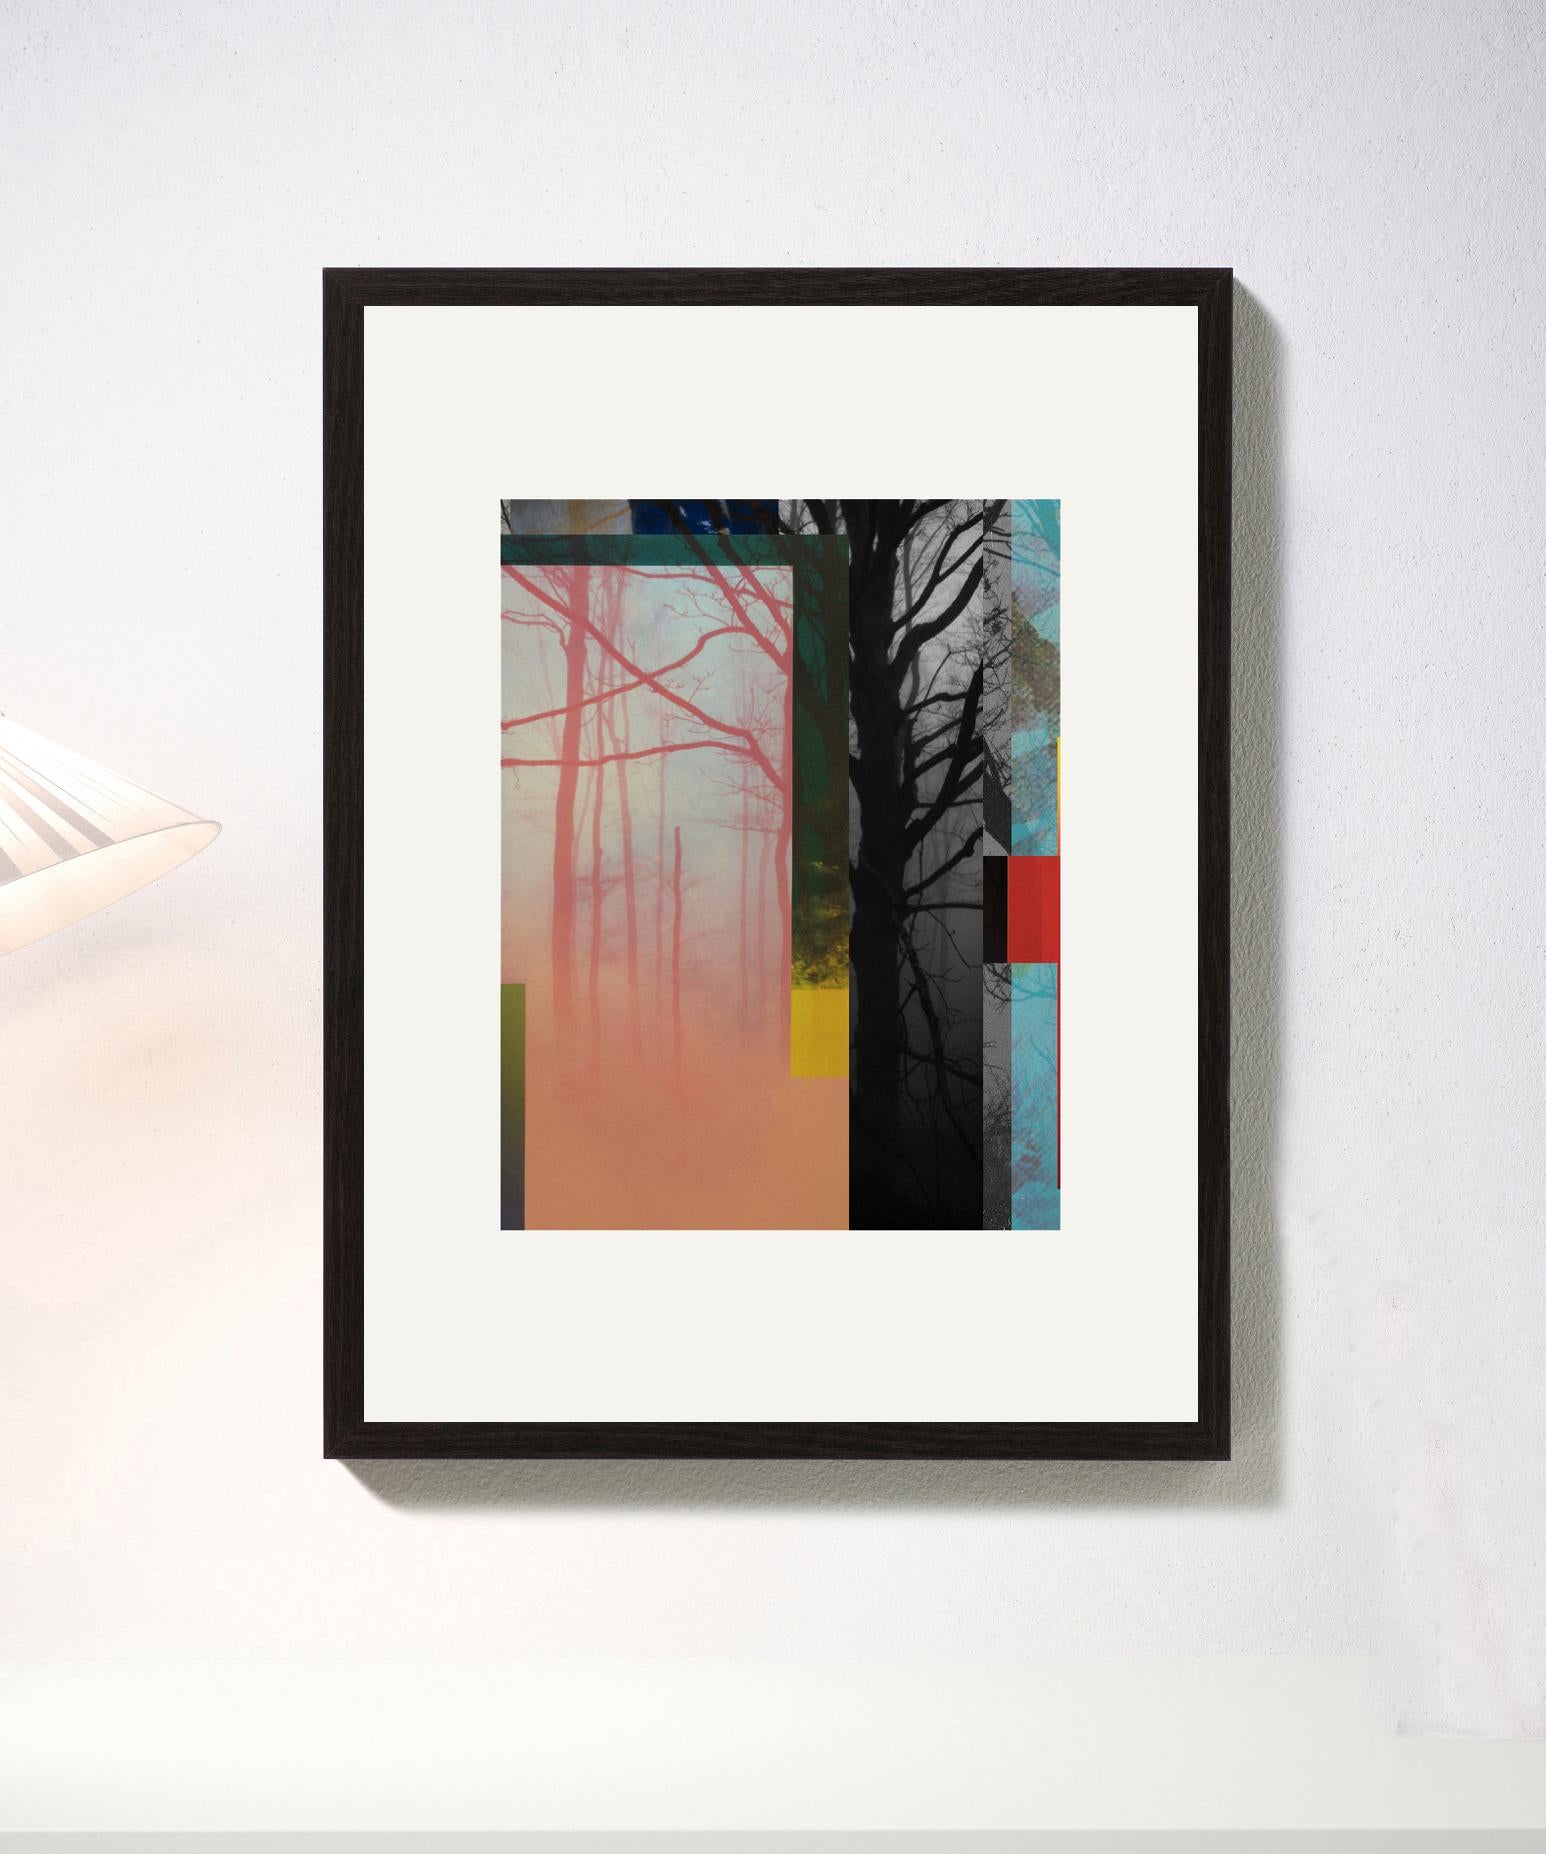 Wald XIX, 2018

Digitaler Pigmentdruck mit Ultrachrome-Tinte auf Fabriano Rosaspina-Papier. Vom Künstler handsigniert, mit Echtheitszertifikat. Auflage von 25 Stück  (Ungerahmt)

Seine Werke wurden im Reina Sofía Museum in Madrid, in der Royal